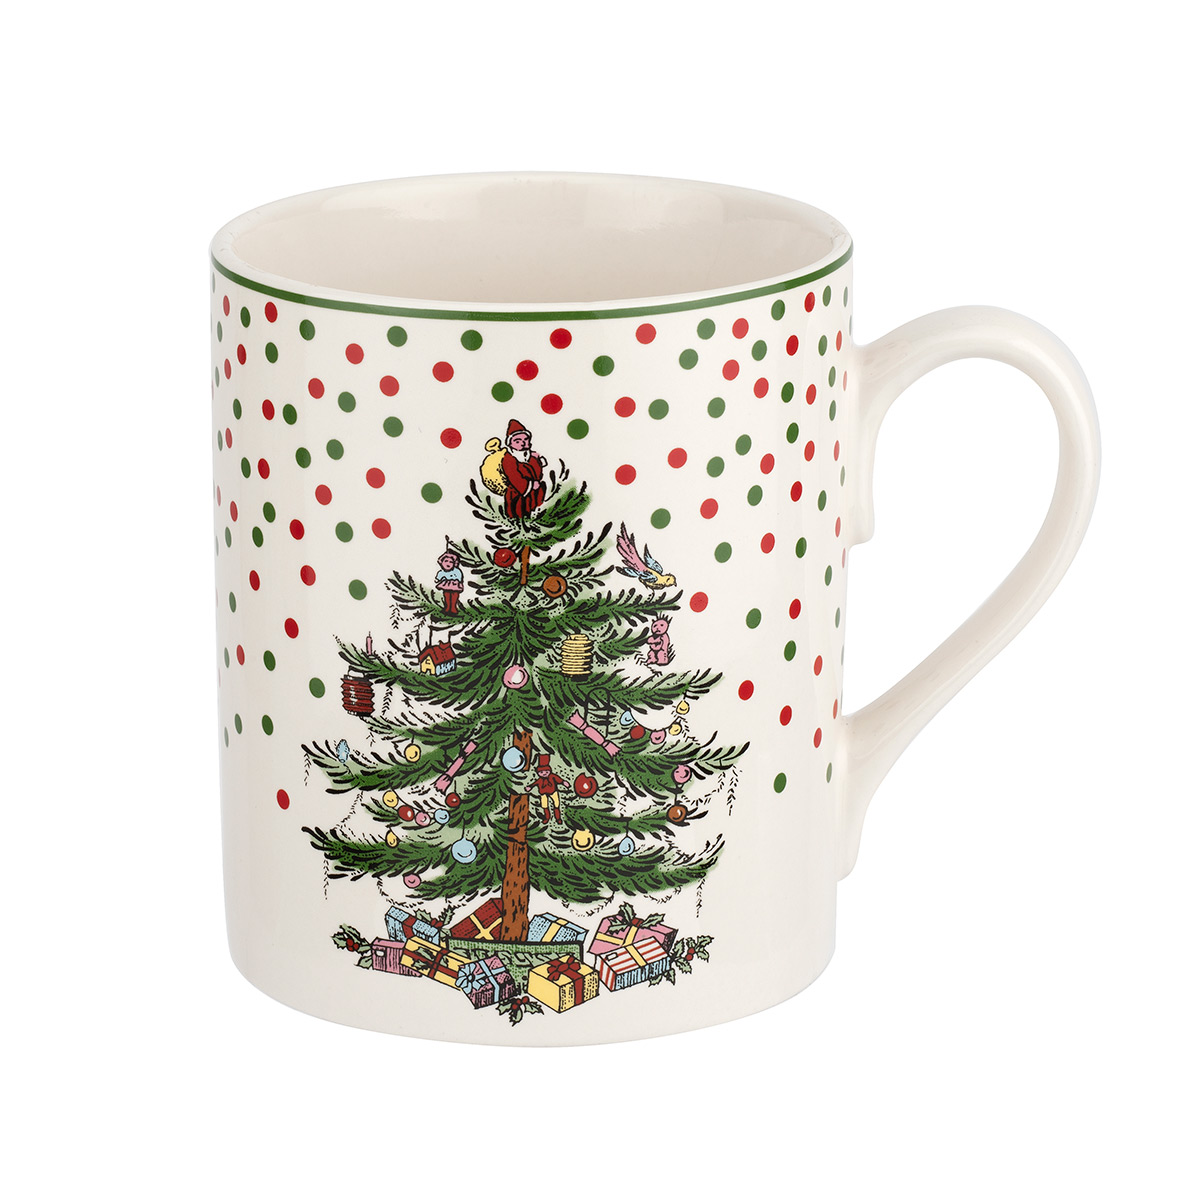 Spode Christmas Tree Polka Dot Mug, 16Oz